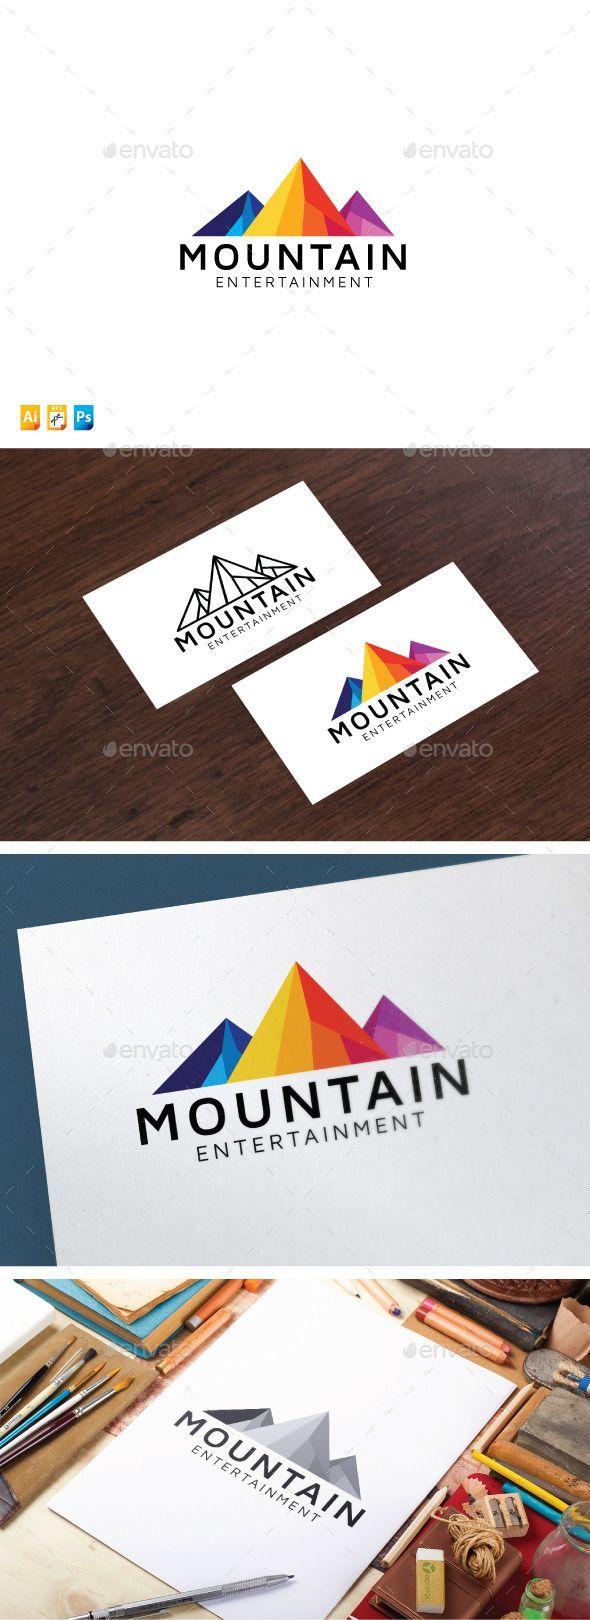 Mountain Entertainment Logo - Mountain Entertainment | Pinterest | Logo templates, Nature logos ...